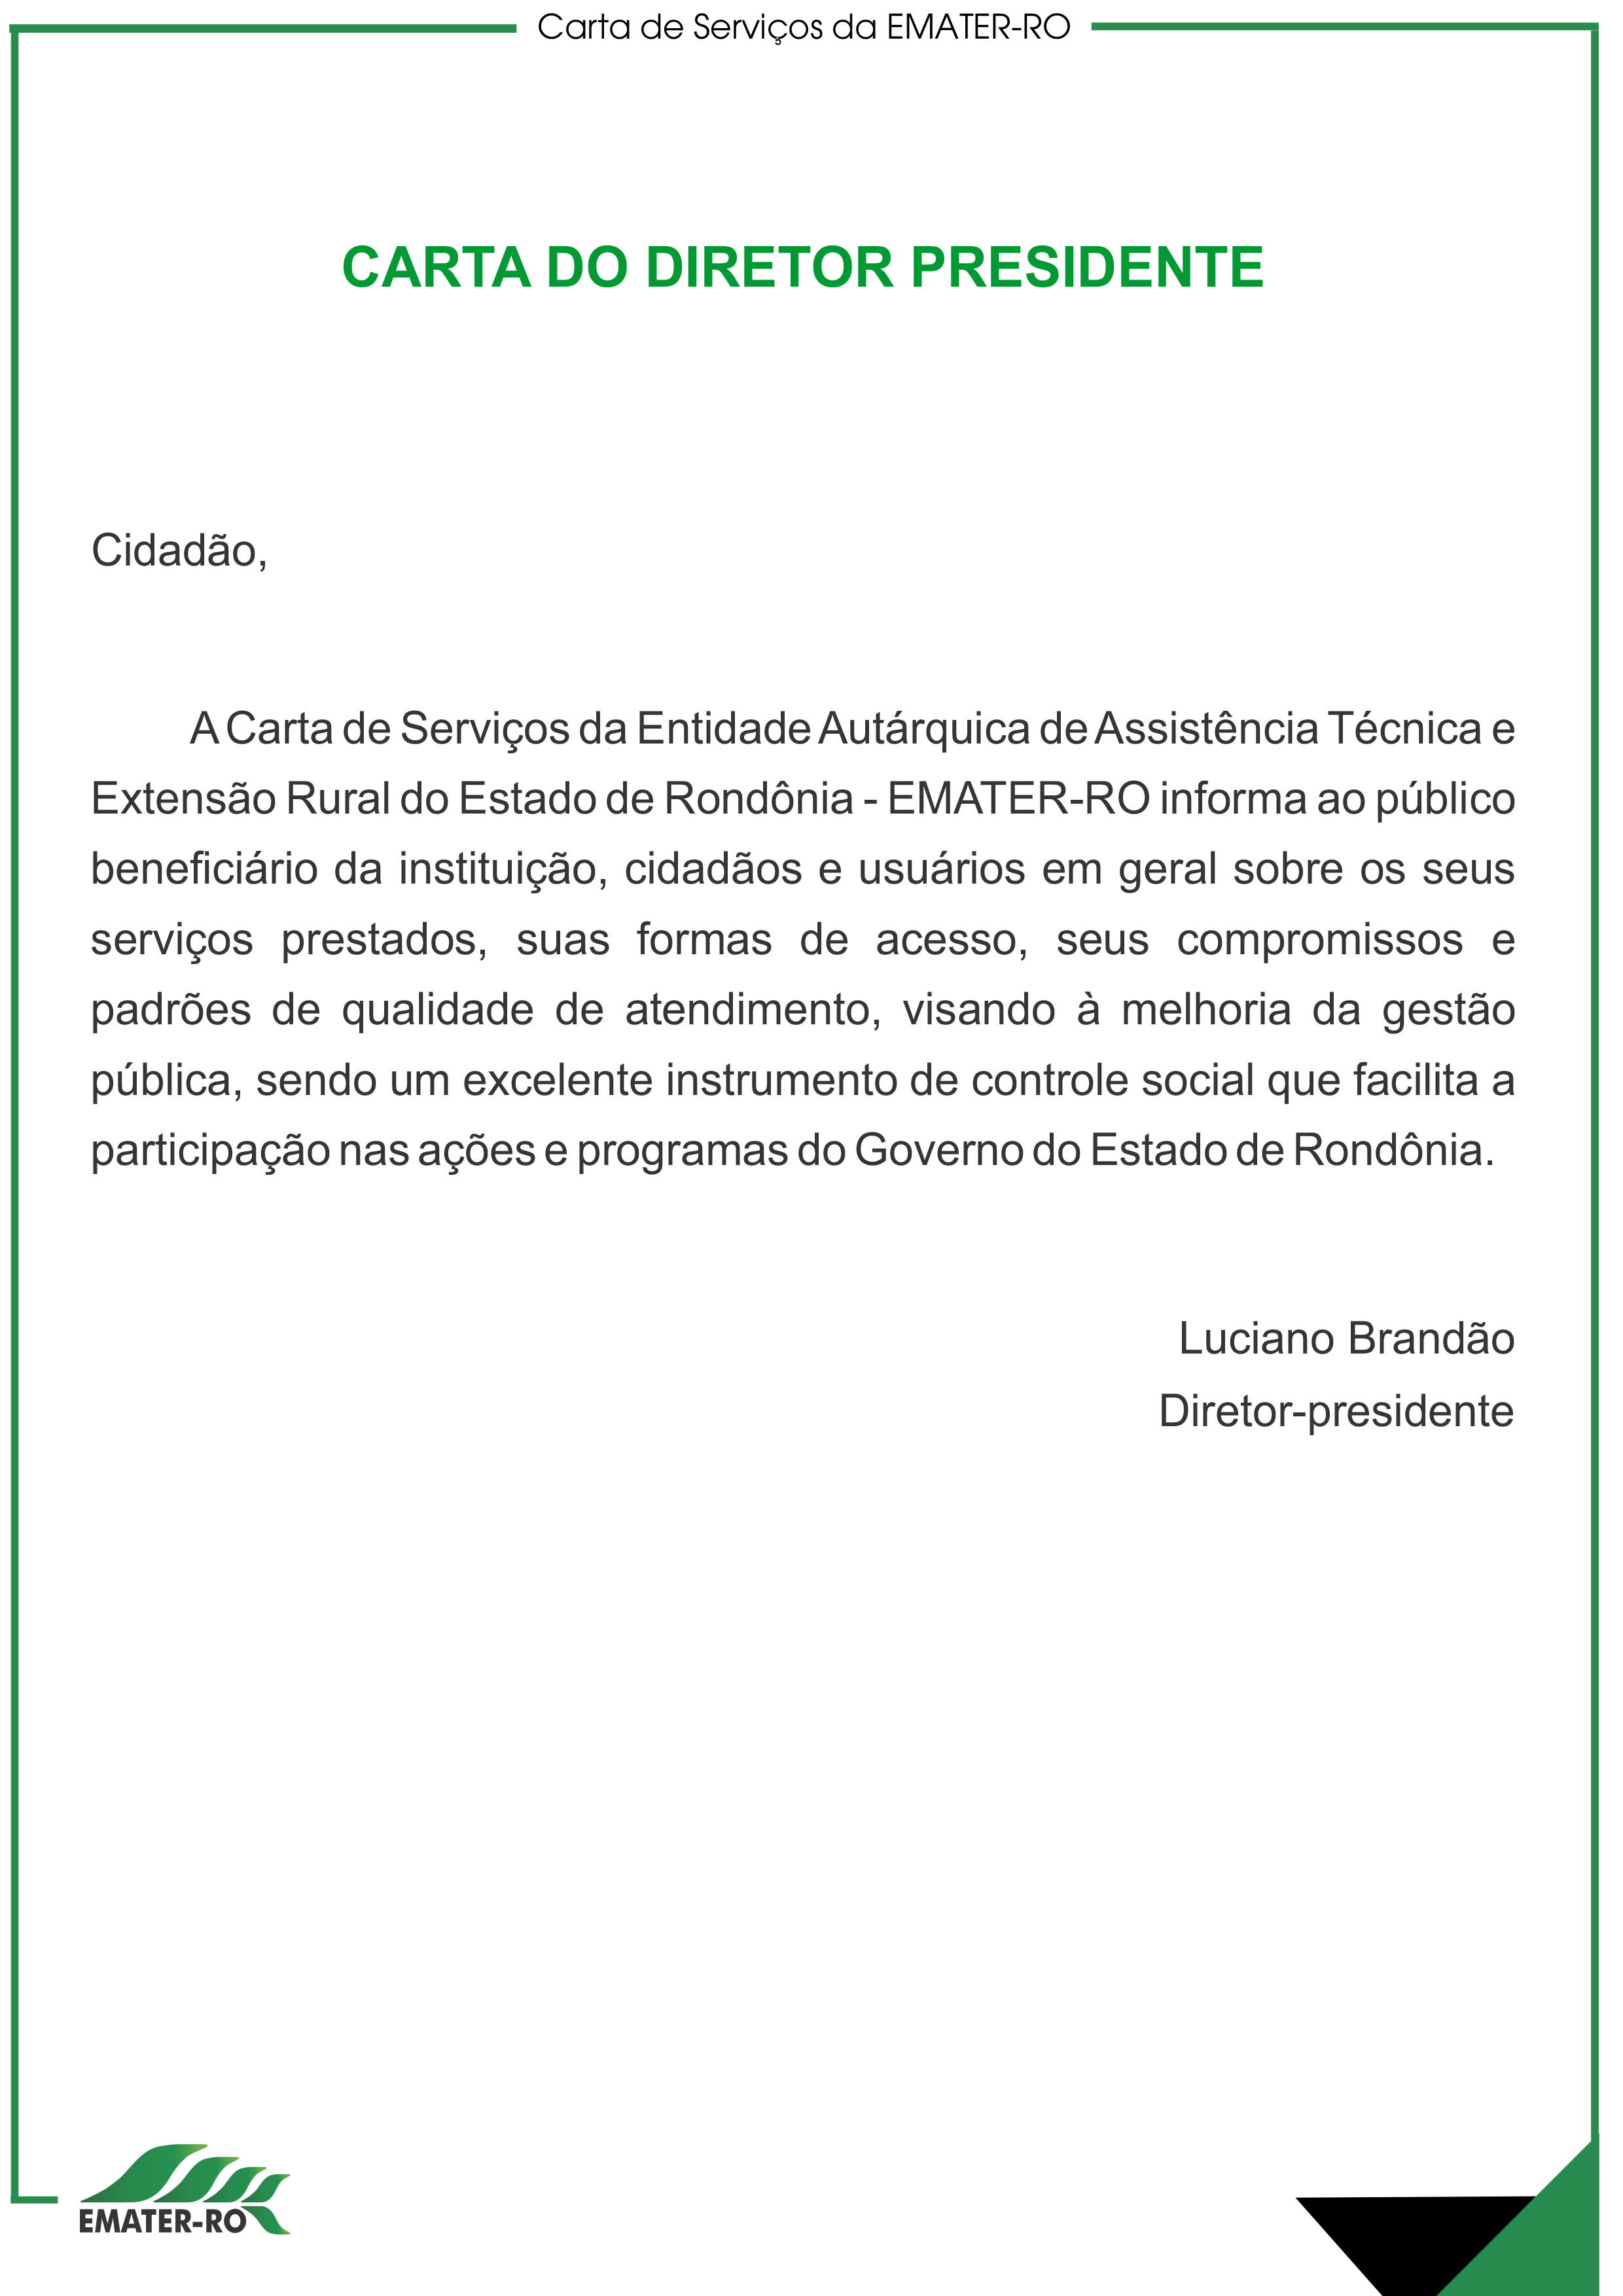 Carta de Serviços-cartilha_2023_versao final.cdr